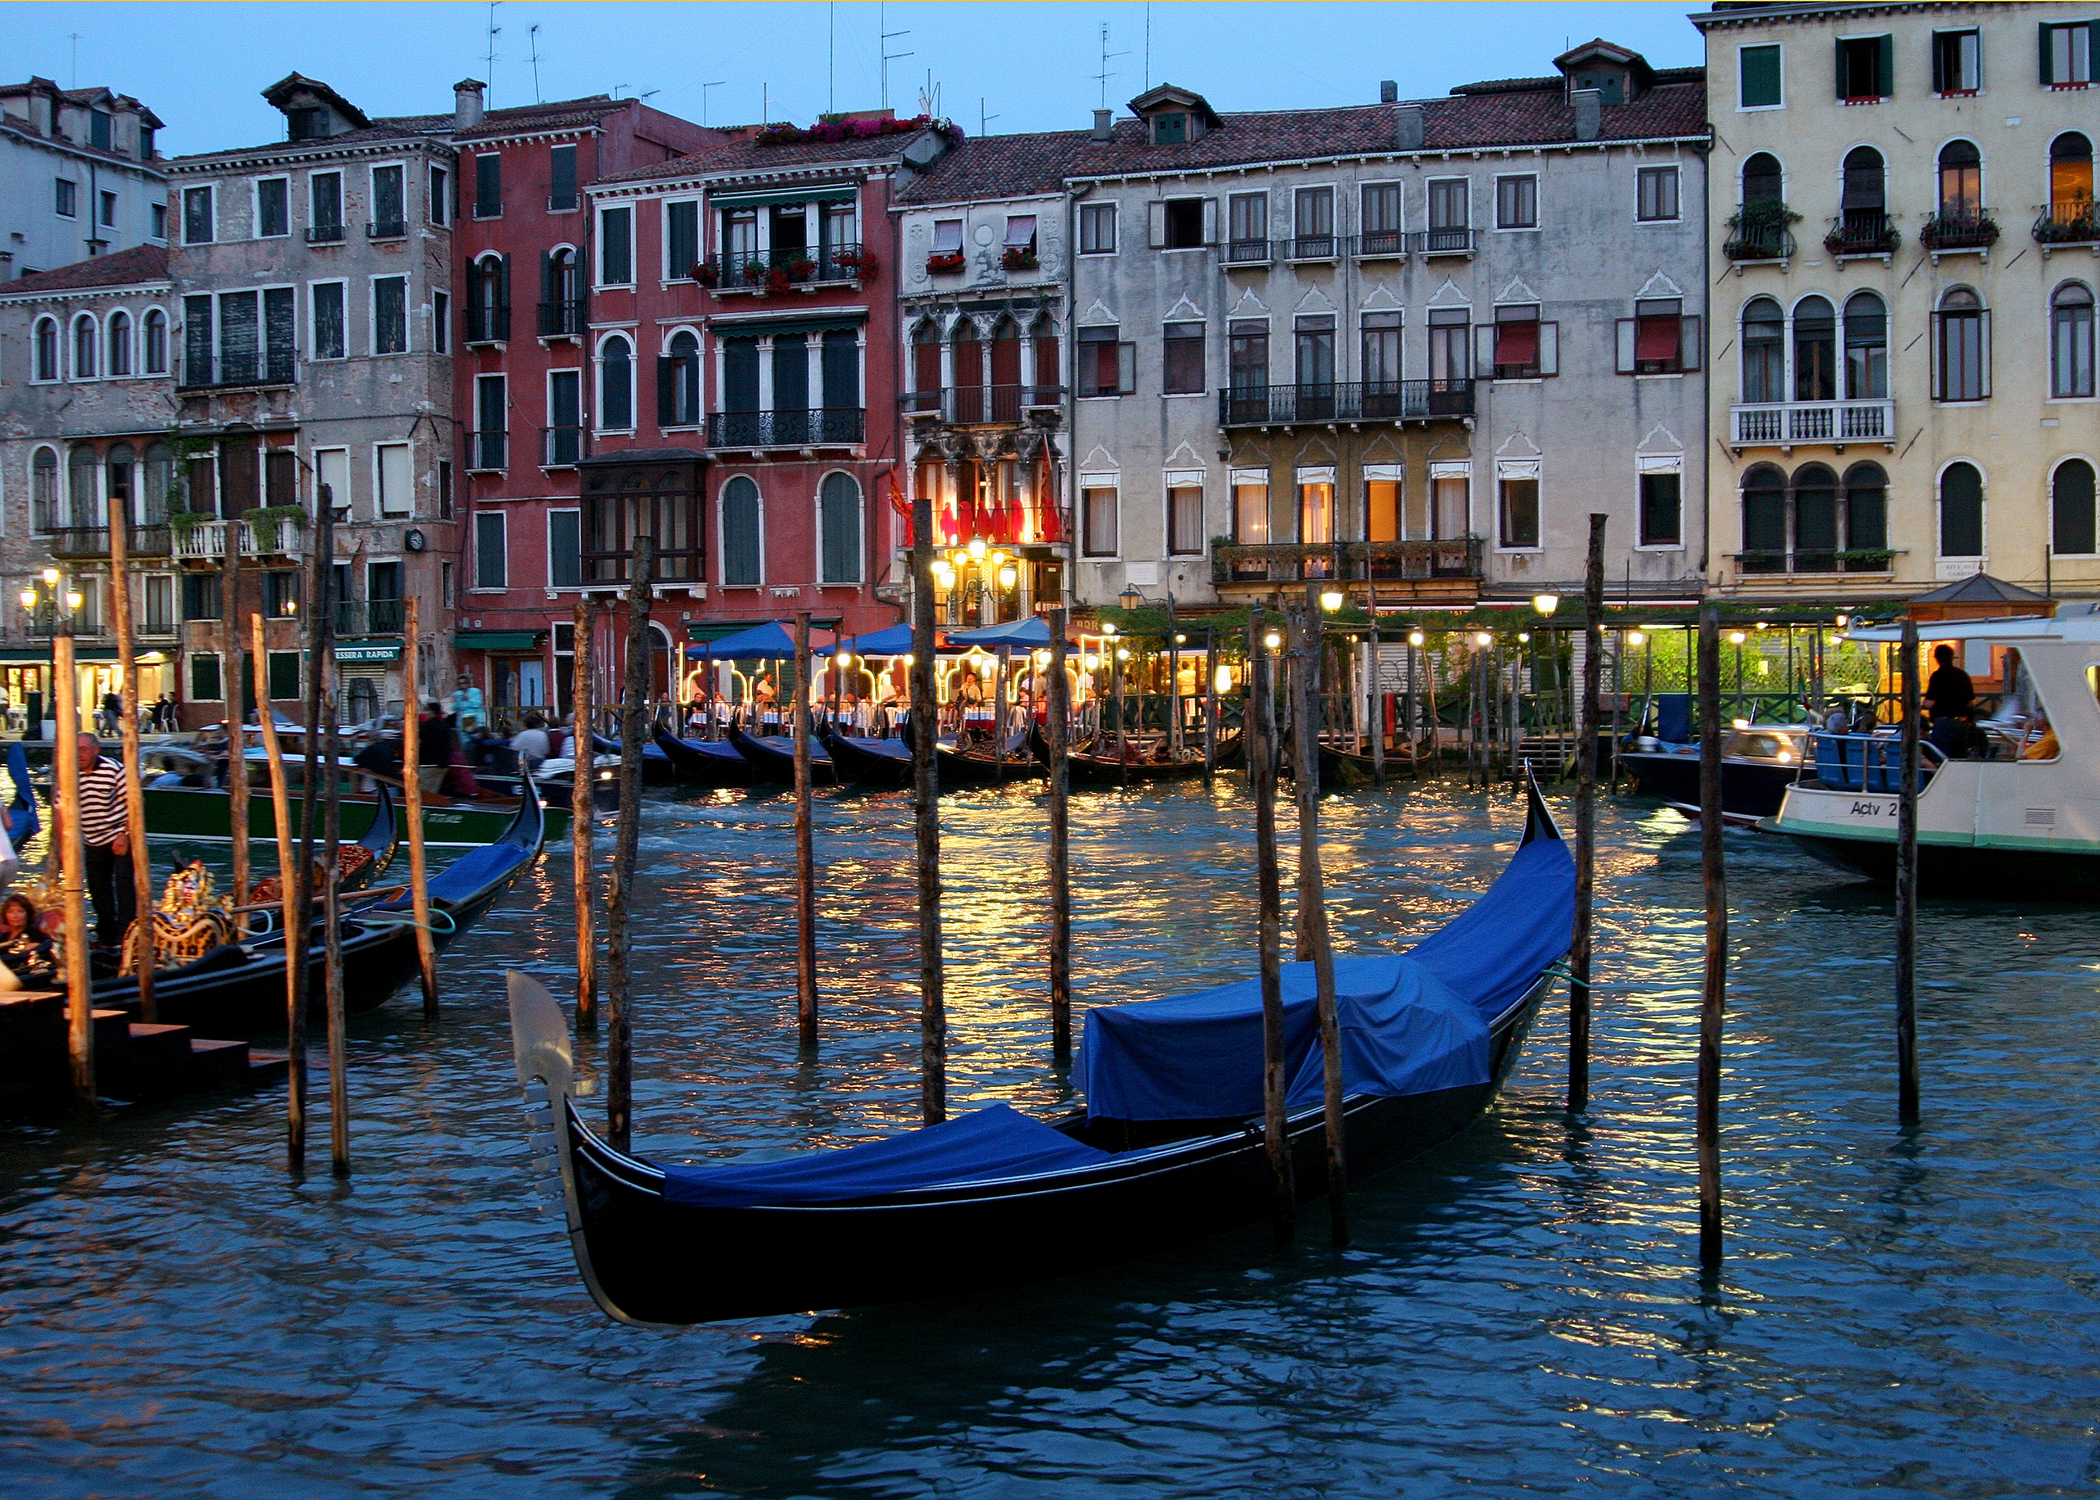 Timothy Dennis, ARCH in Italy, Venice gondolas